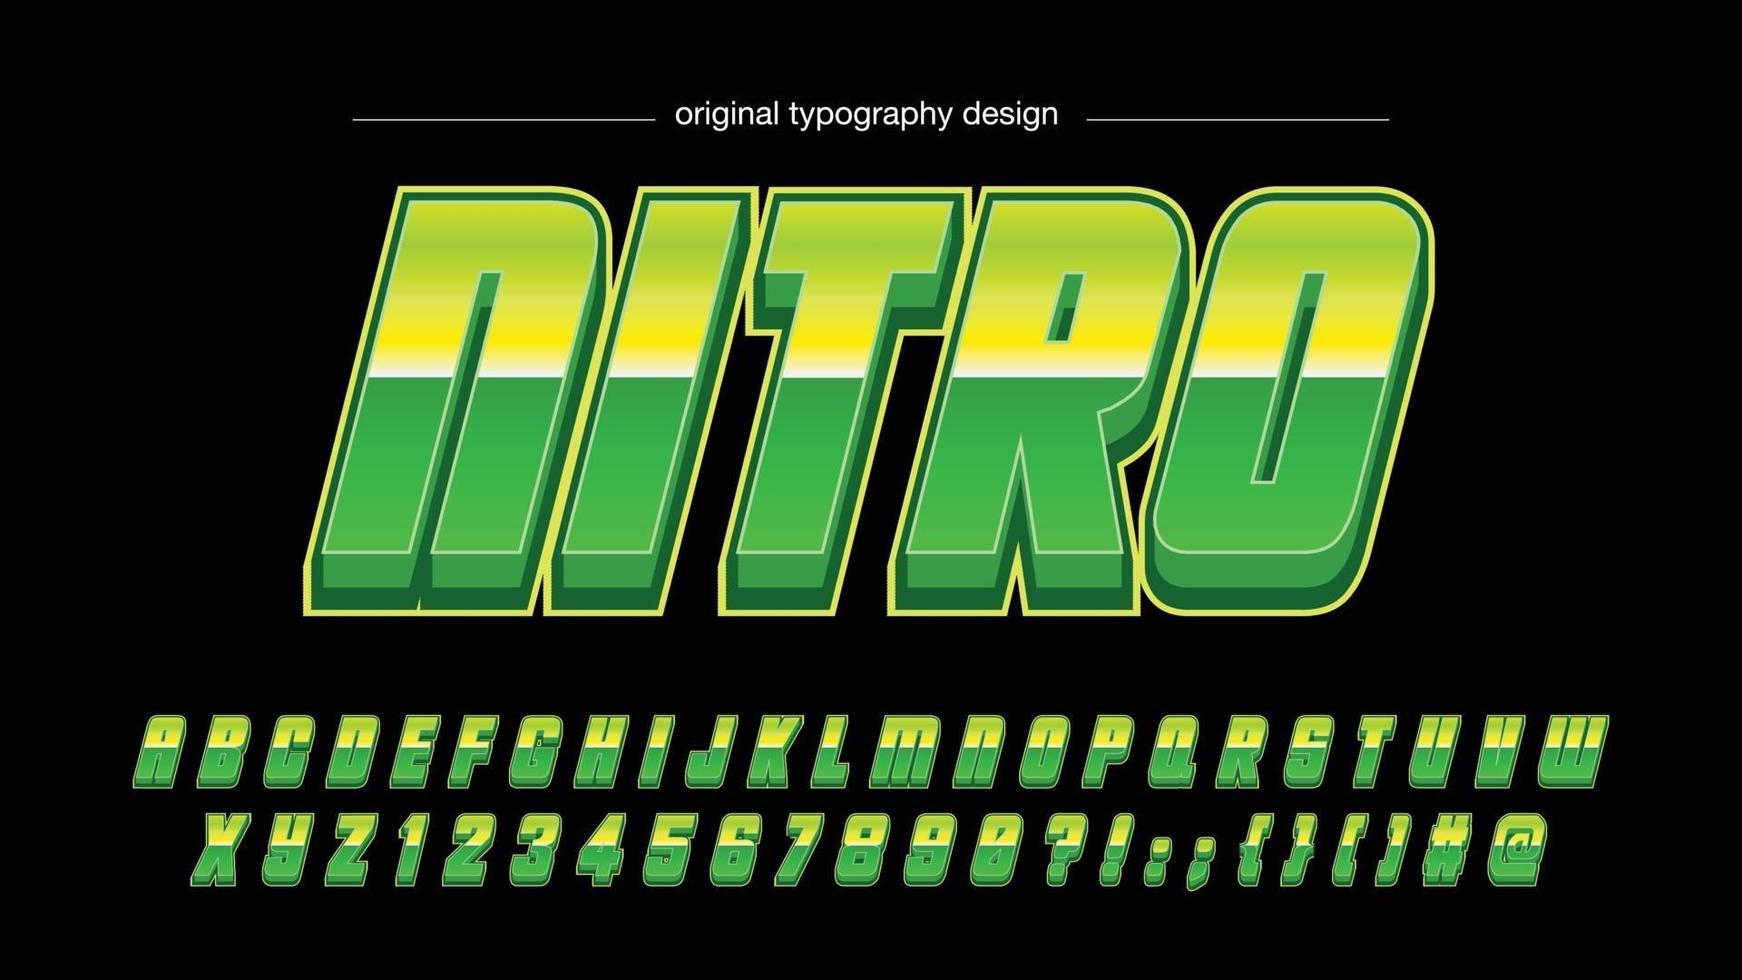 tipografía futurista verde cursiva metálica vector